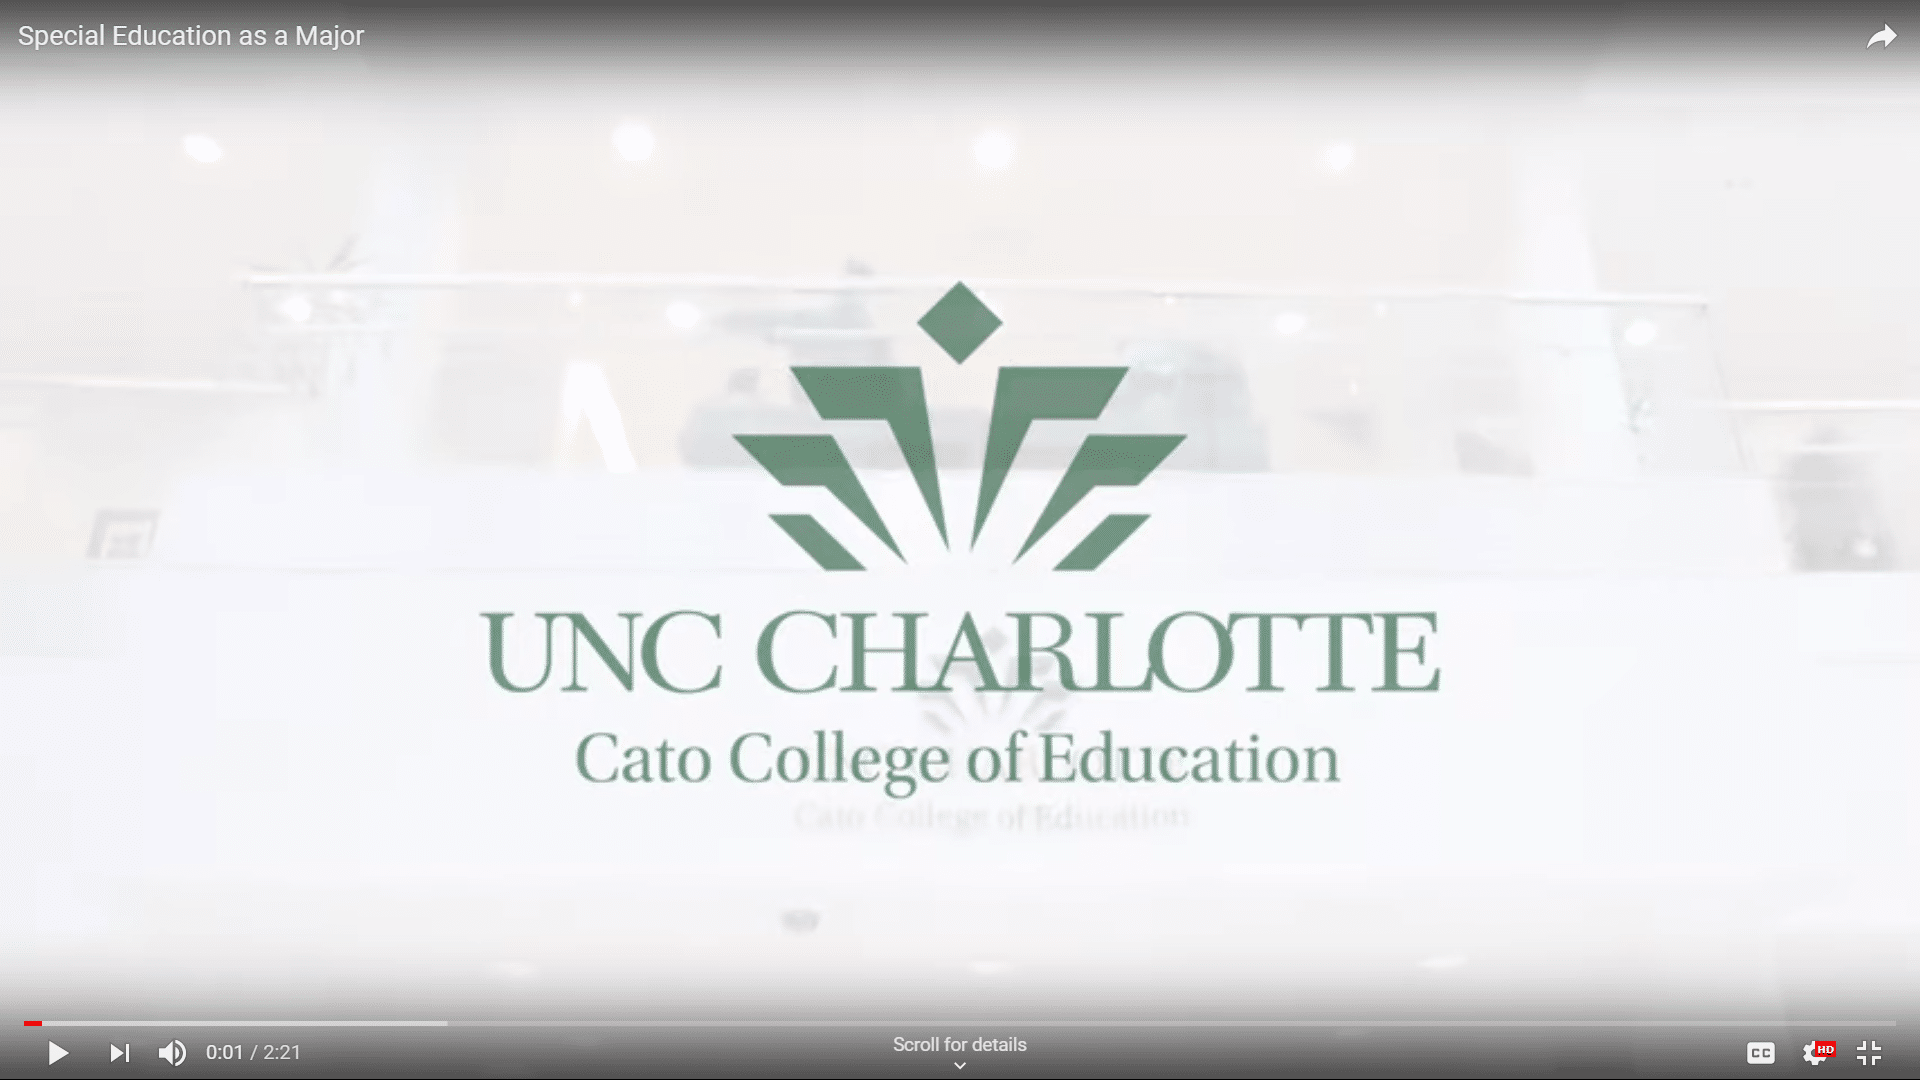 UNC Charlotte - Cato College of Education